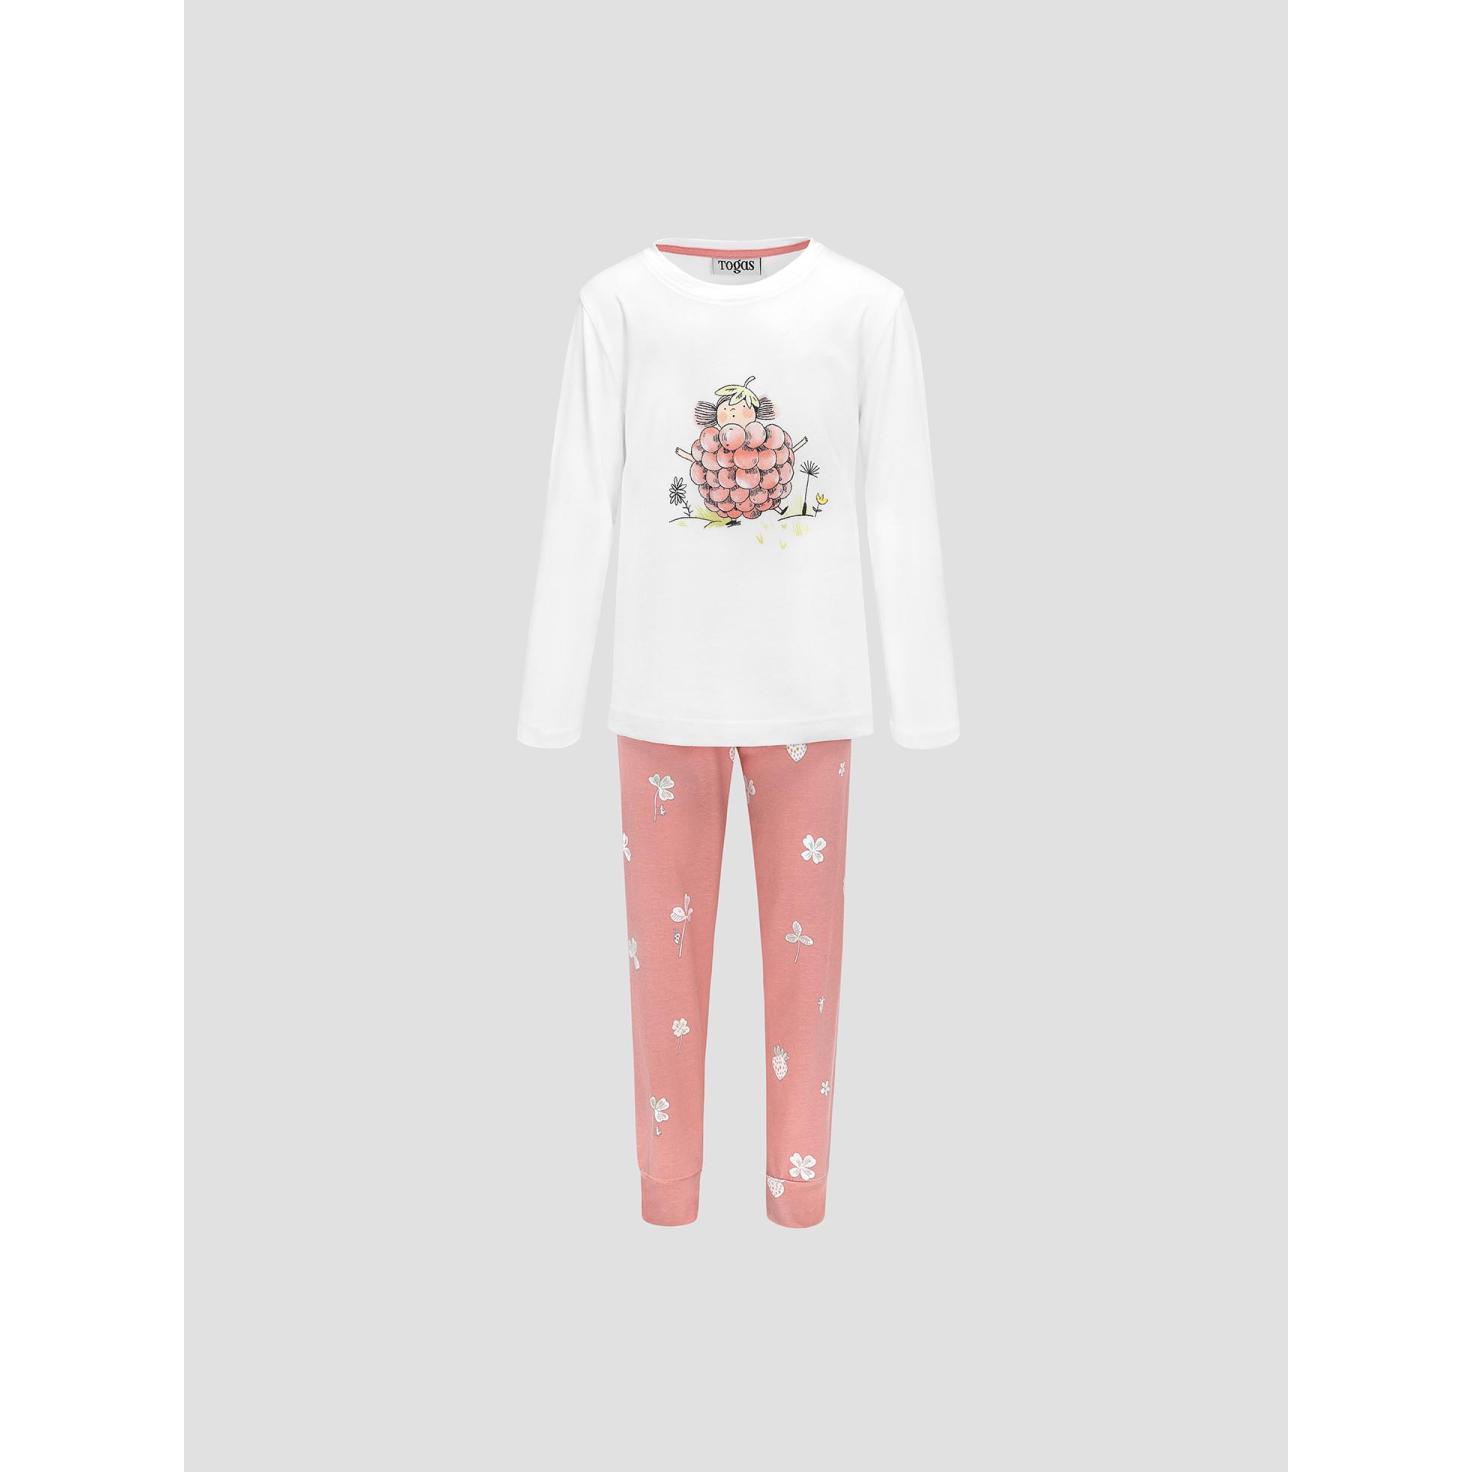 Пижама для девочек Kids by togas Стробби бело-розовый 116-122 см жен пижама с шортами инь янь белый р 46